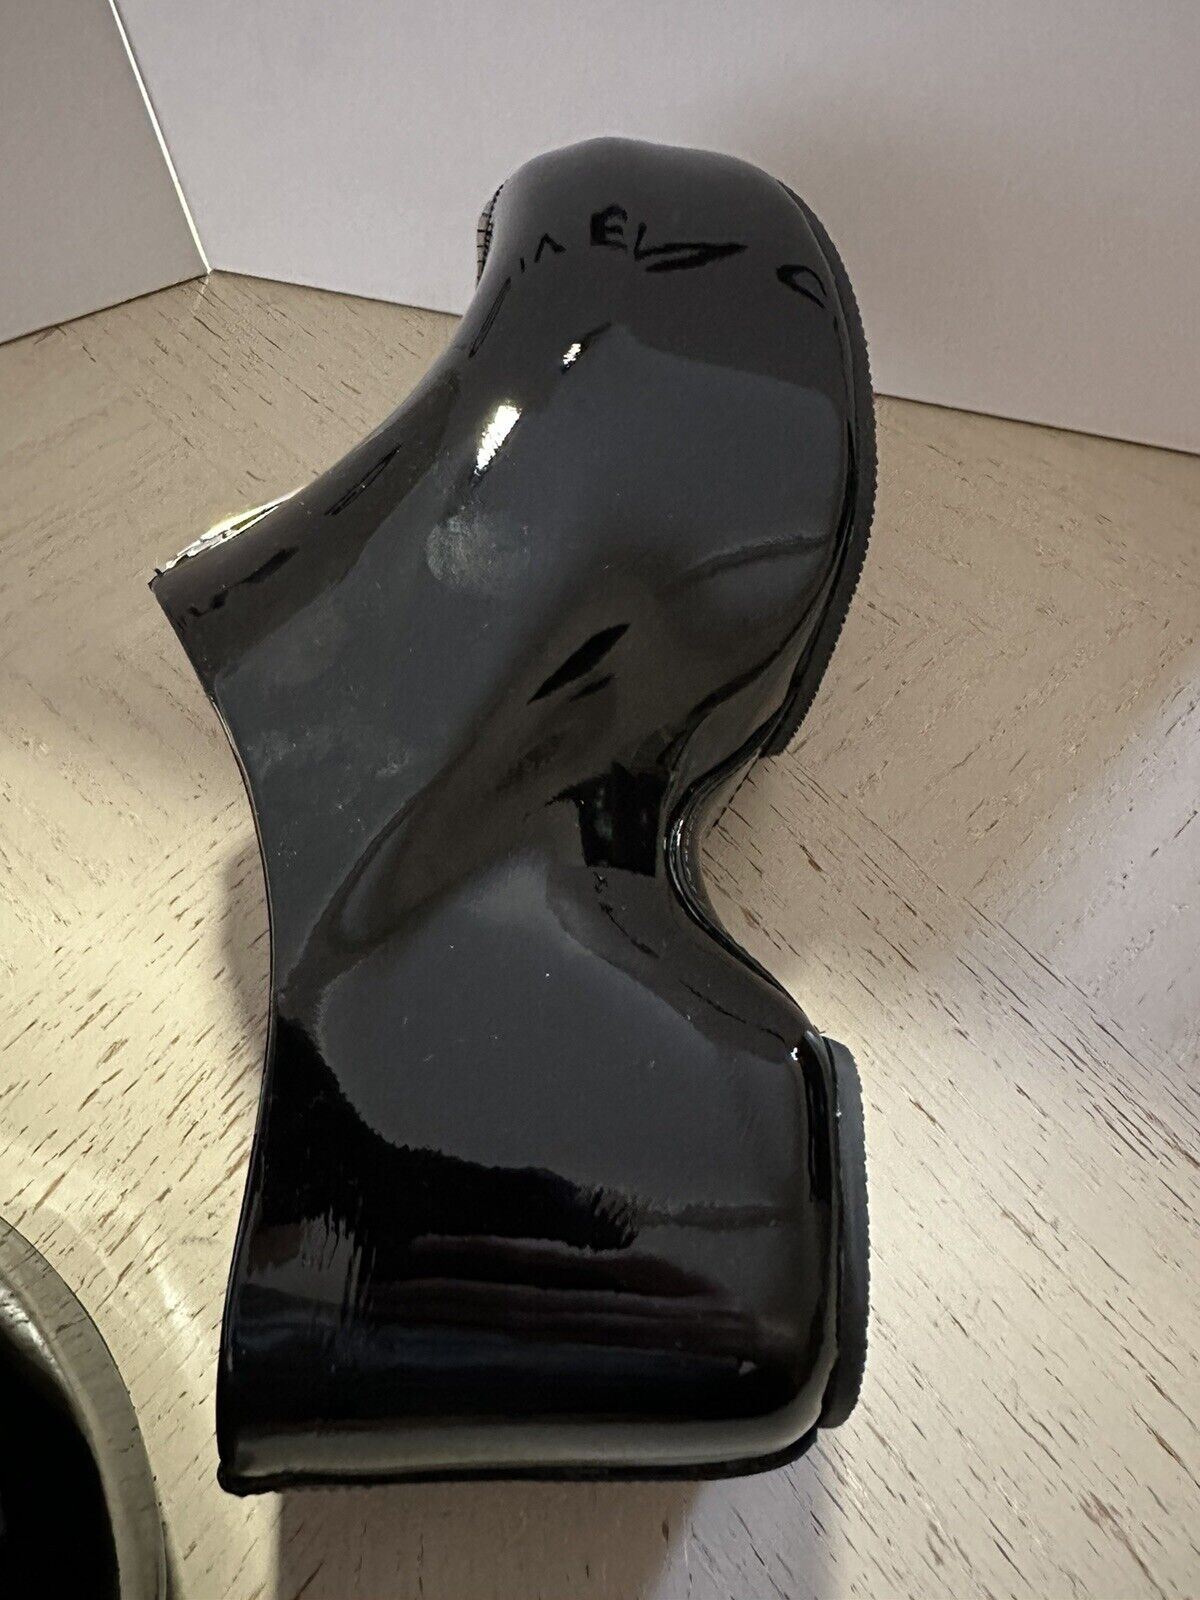 NIB $ 1150 Givenchy Damen G Patent Zip-Up Mule Clogs Schuhe Schwarz 9 US/39 Eu Italien